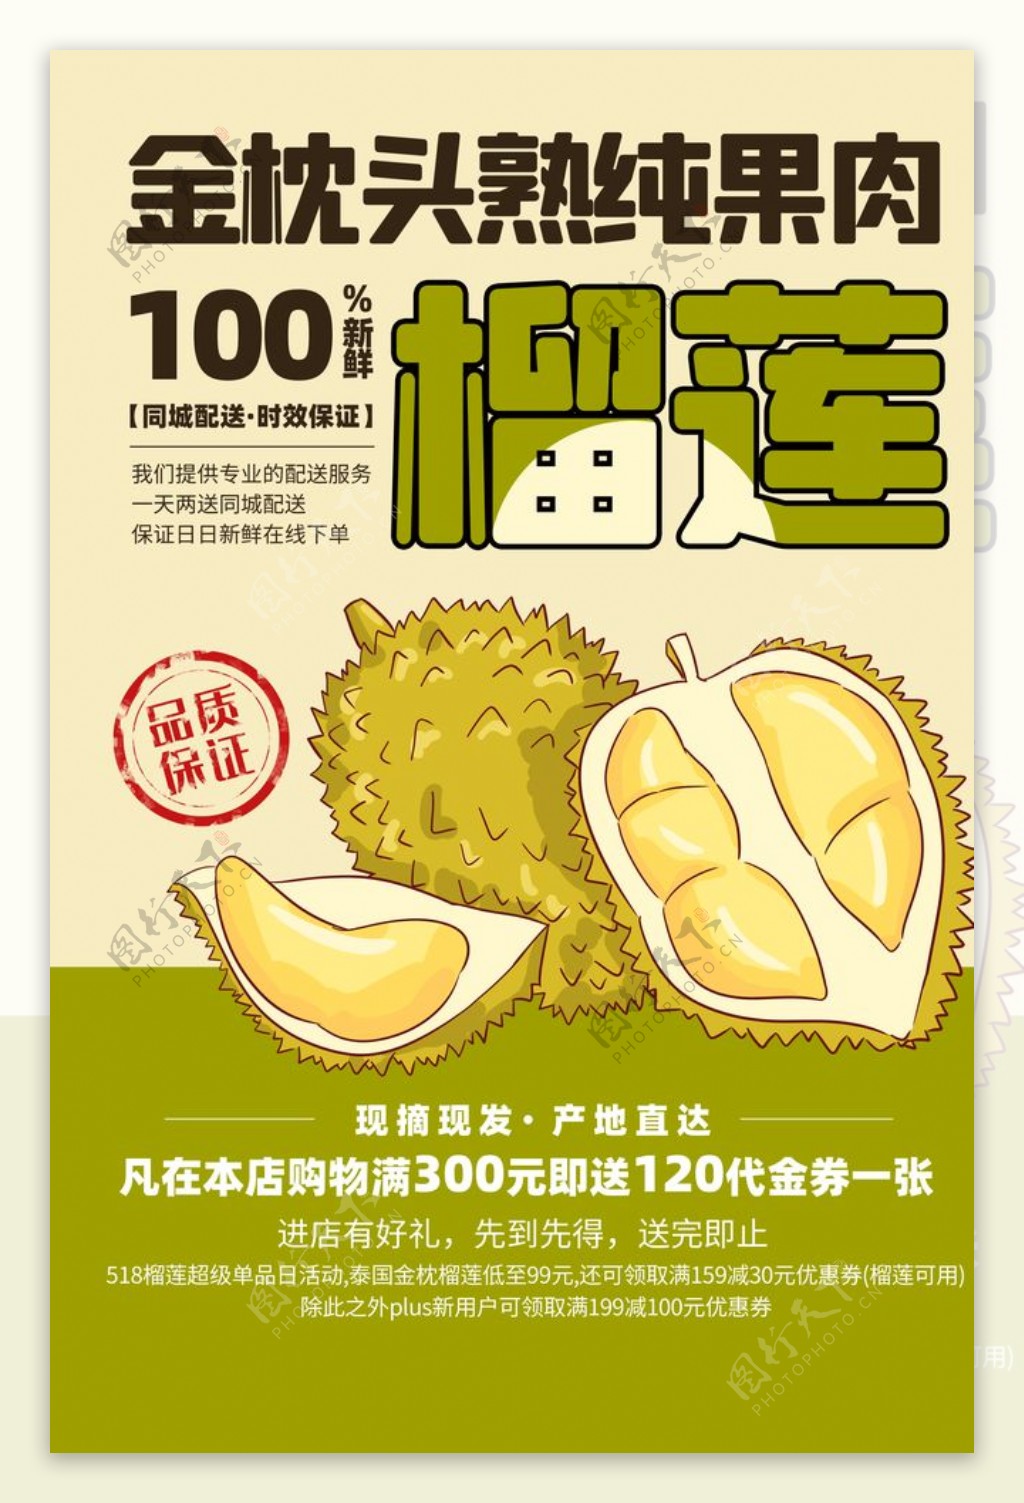 榴莲水果之王活动宣传海报素材图片